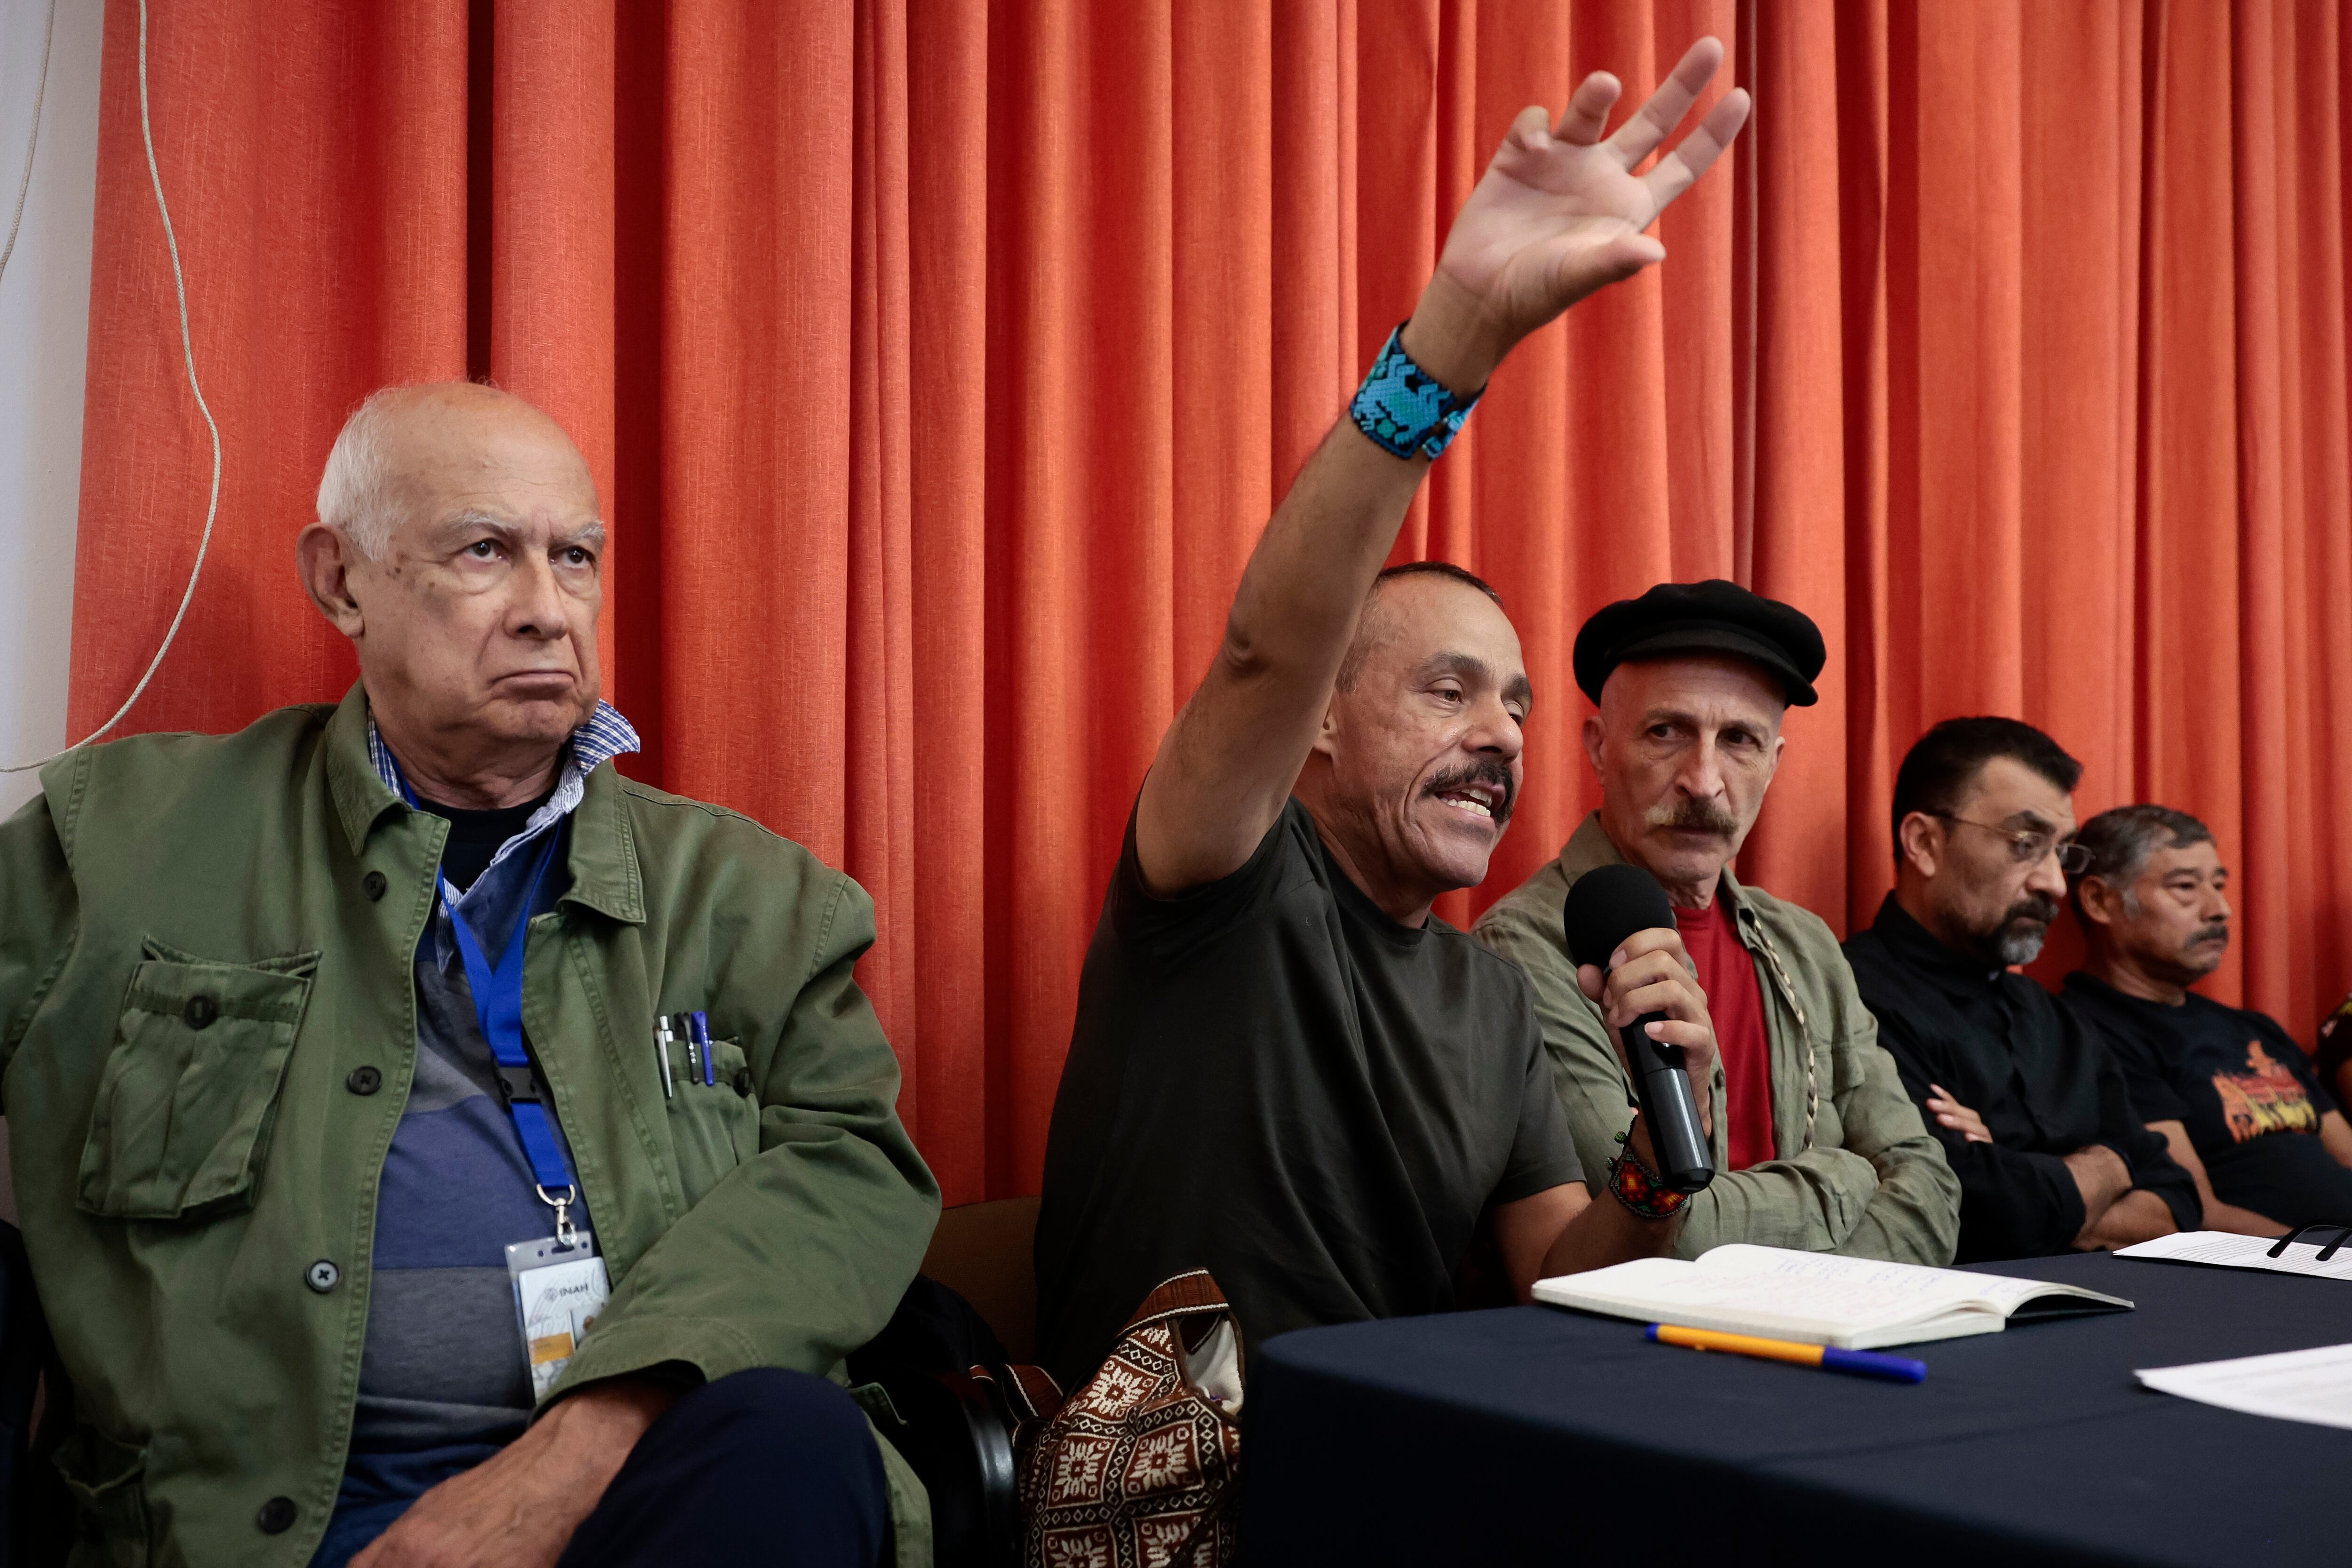 El actor Daniel Giménez Cacho (al centro) y otras personas hablan en nombre del movimiento zapatista, este miércoles en Ciudad de México.